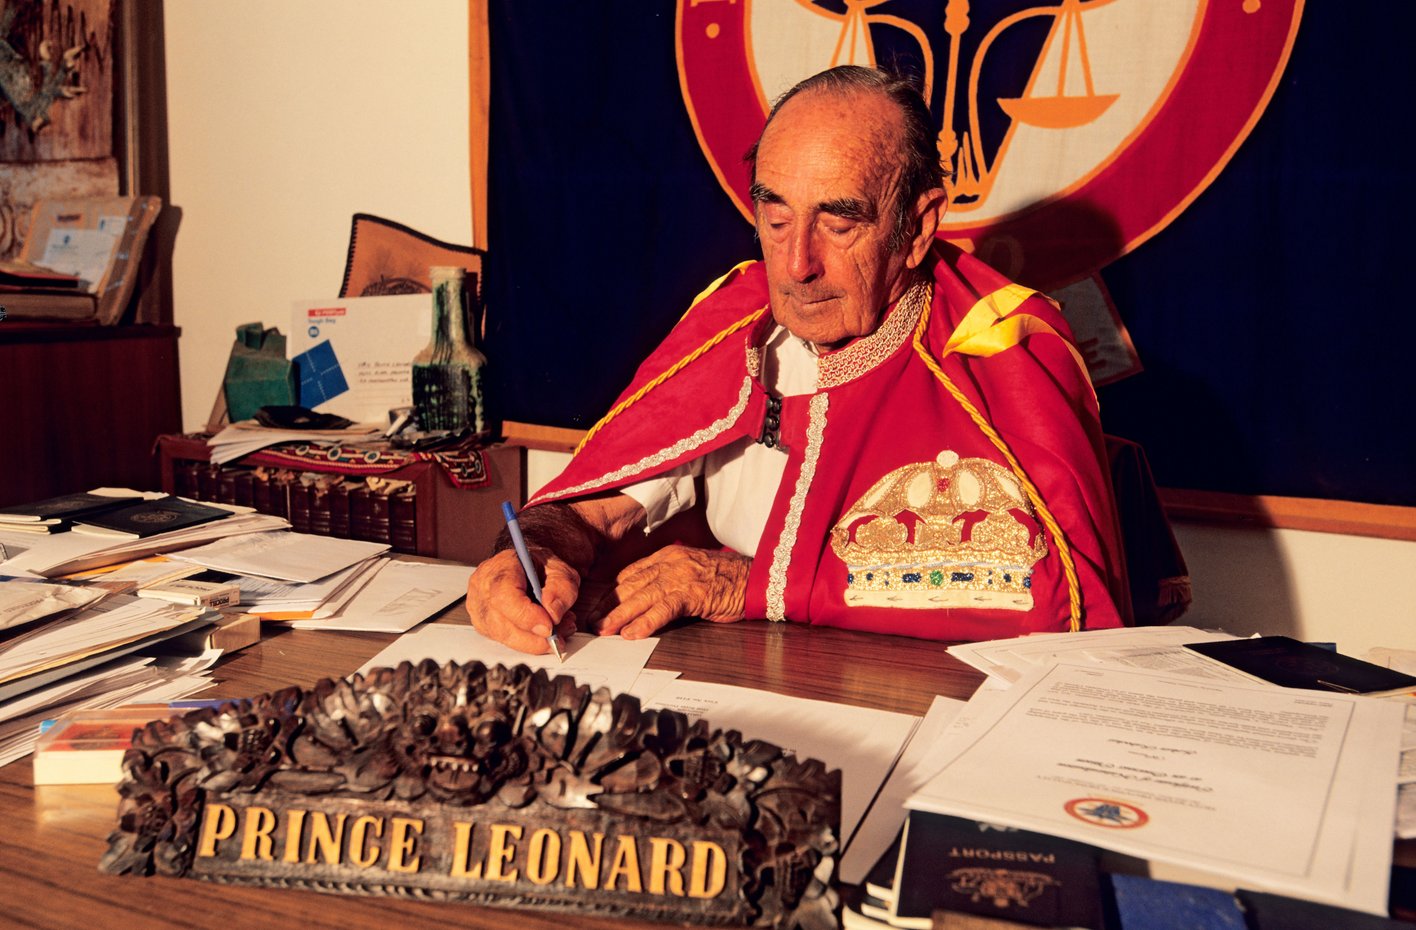 His Royal Highness Pince Leonard I of Hutt in alta uniforme al tavolo di lavoro. Australia (WA)